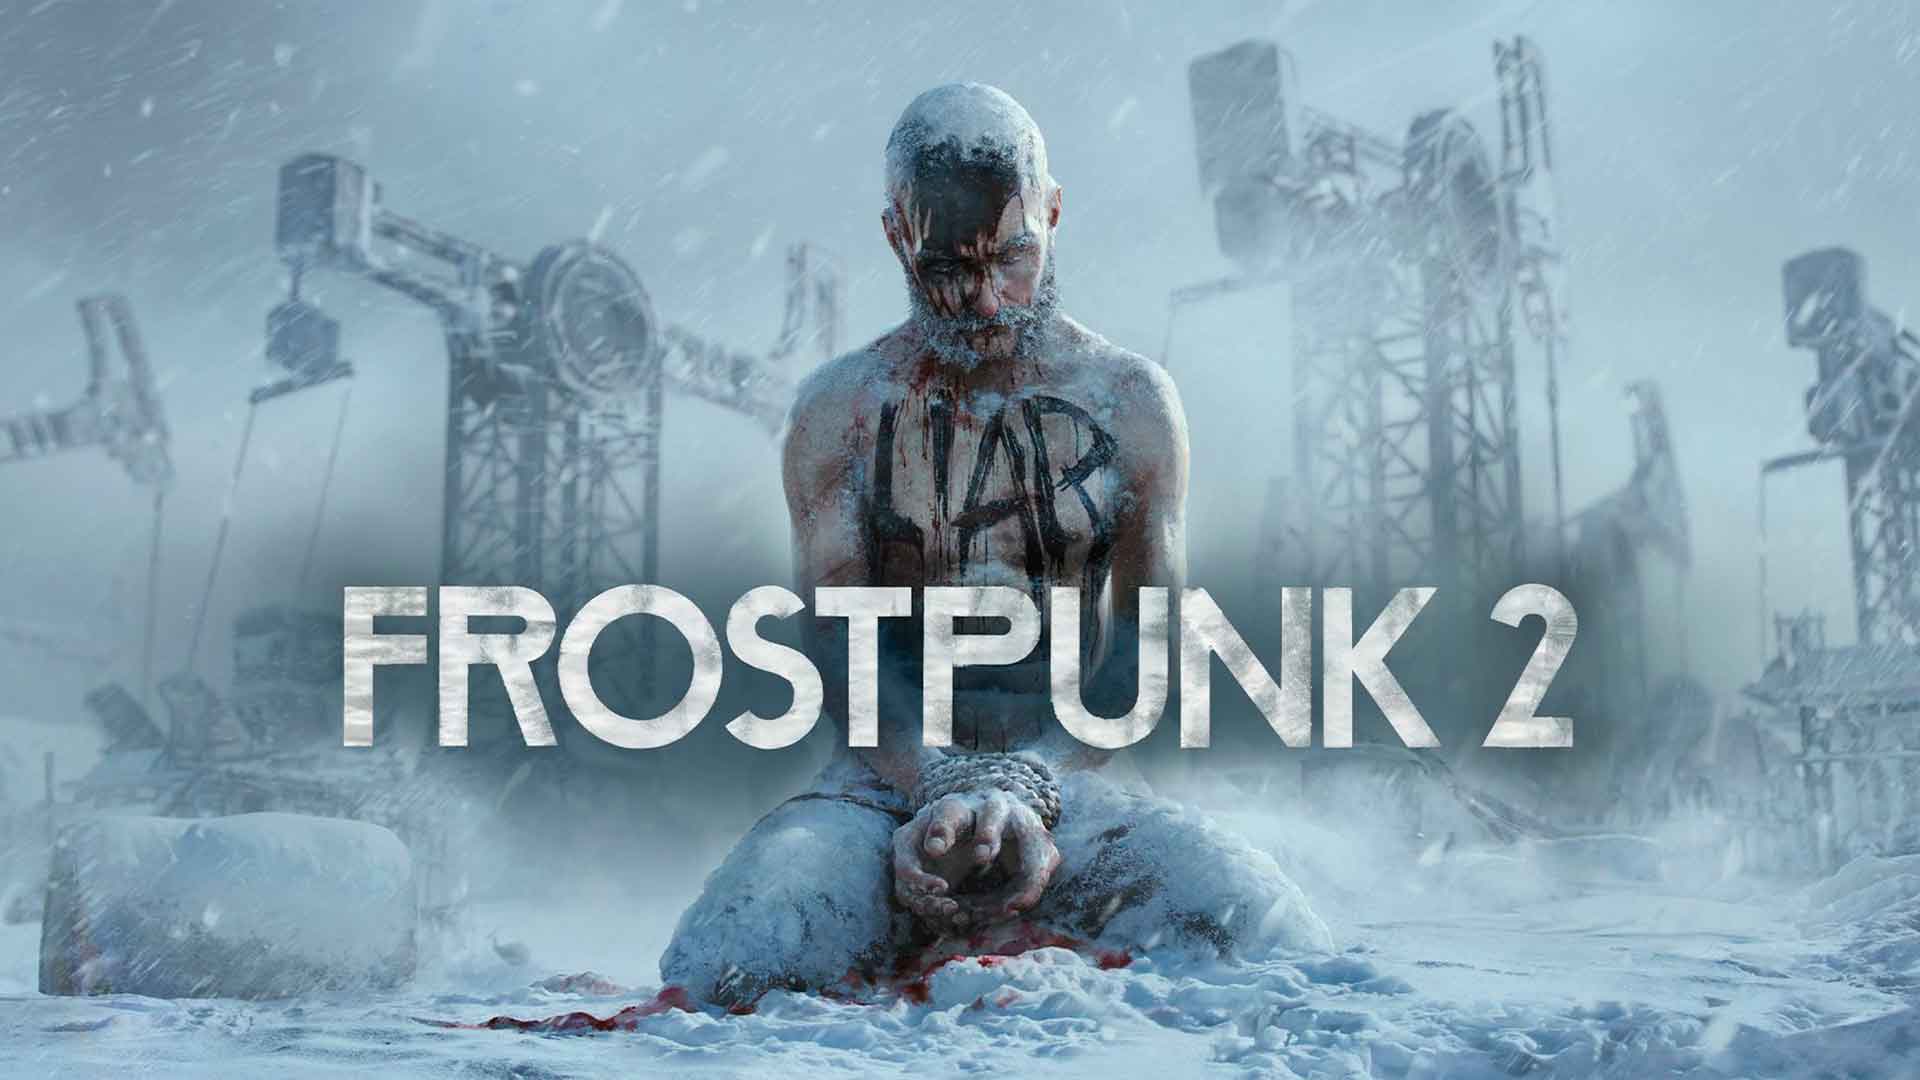 Разработчики из 11 bit studios анонсировали вторую версию стратегии Frostpunk! Действия игры происходят спустя 30 лет после снежной катастрофы